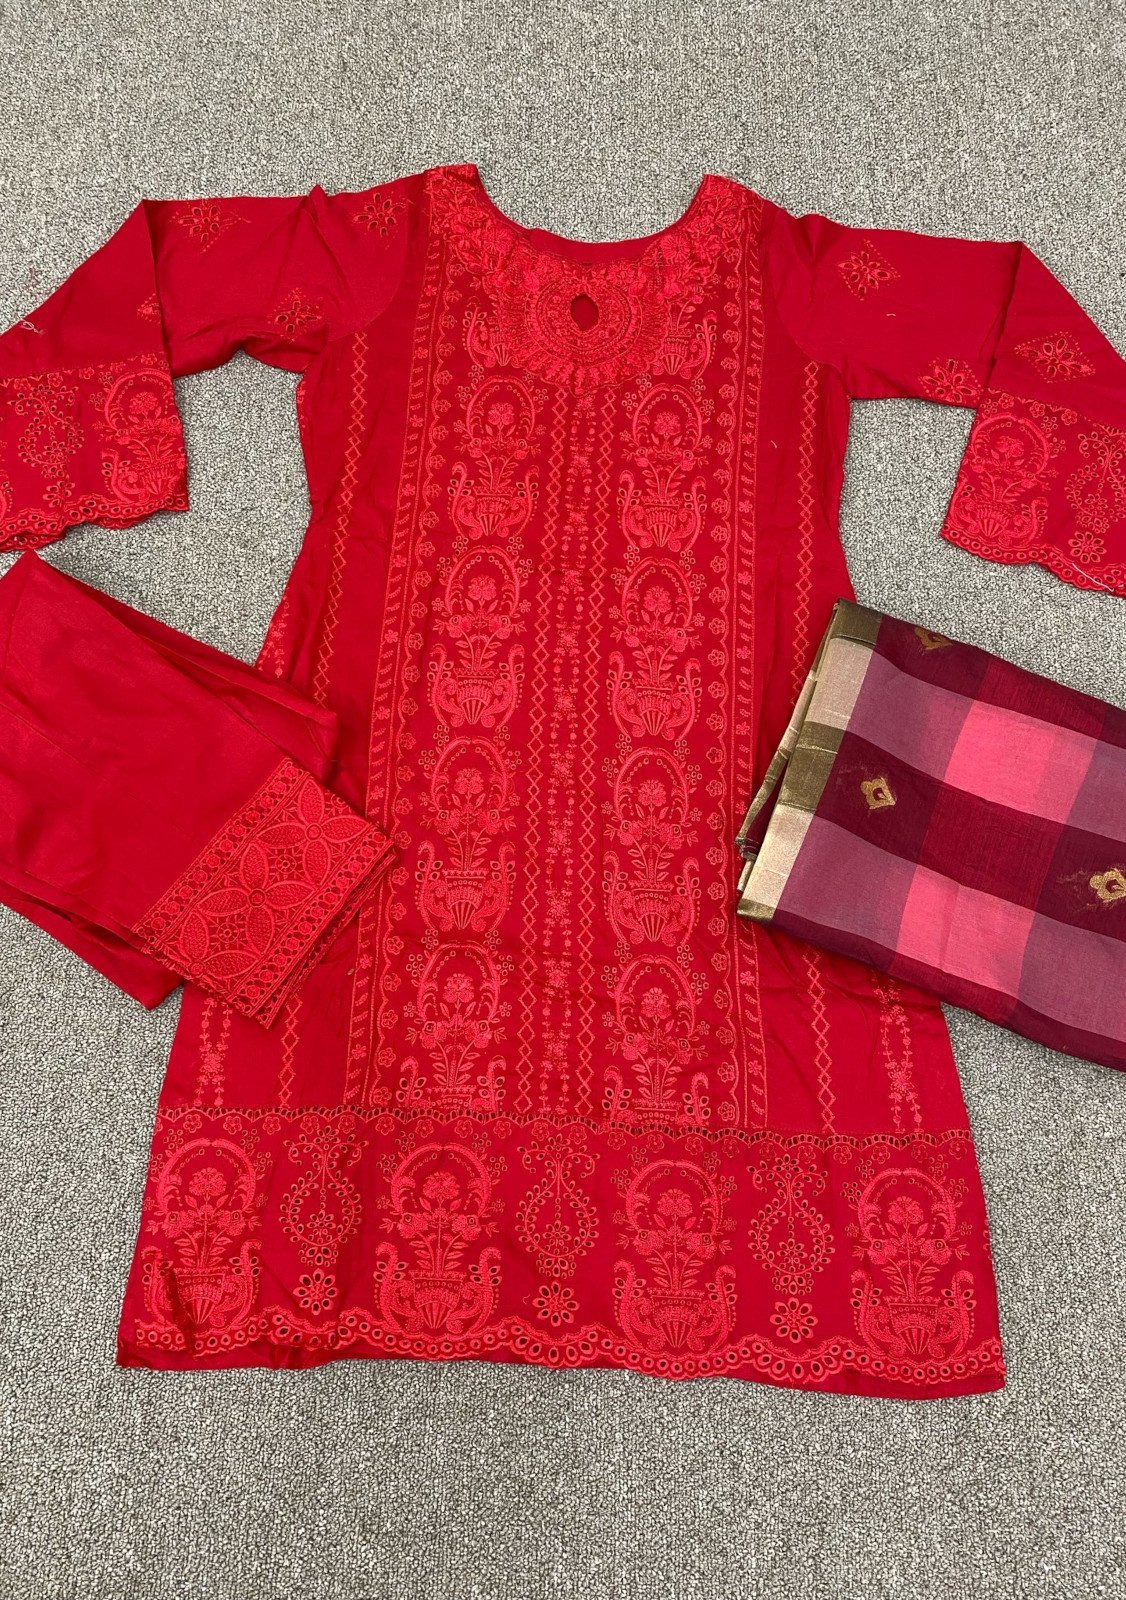 Zainab Chottani Embroidered Pakistani Master Copy Lawn Dress: Deshi Besh.